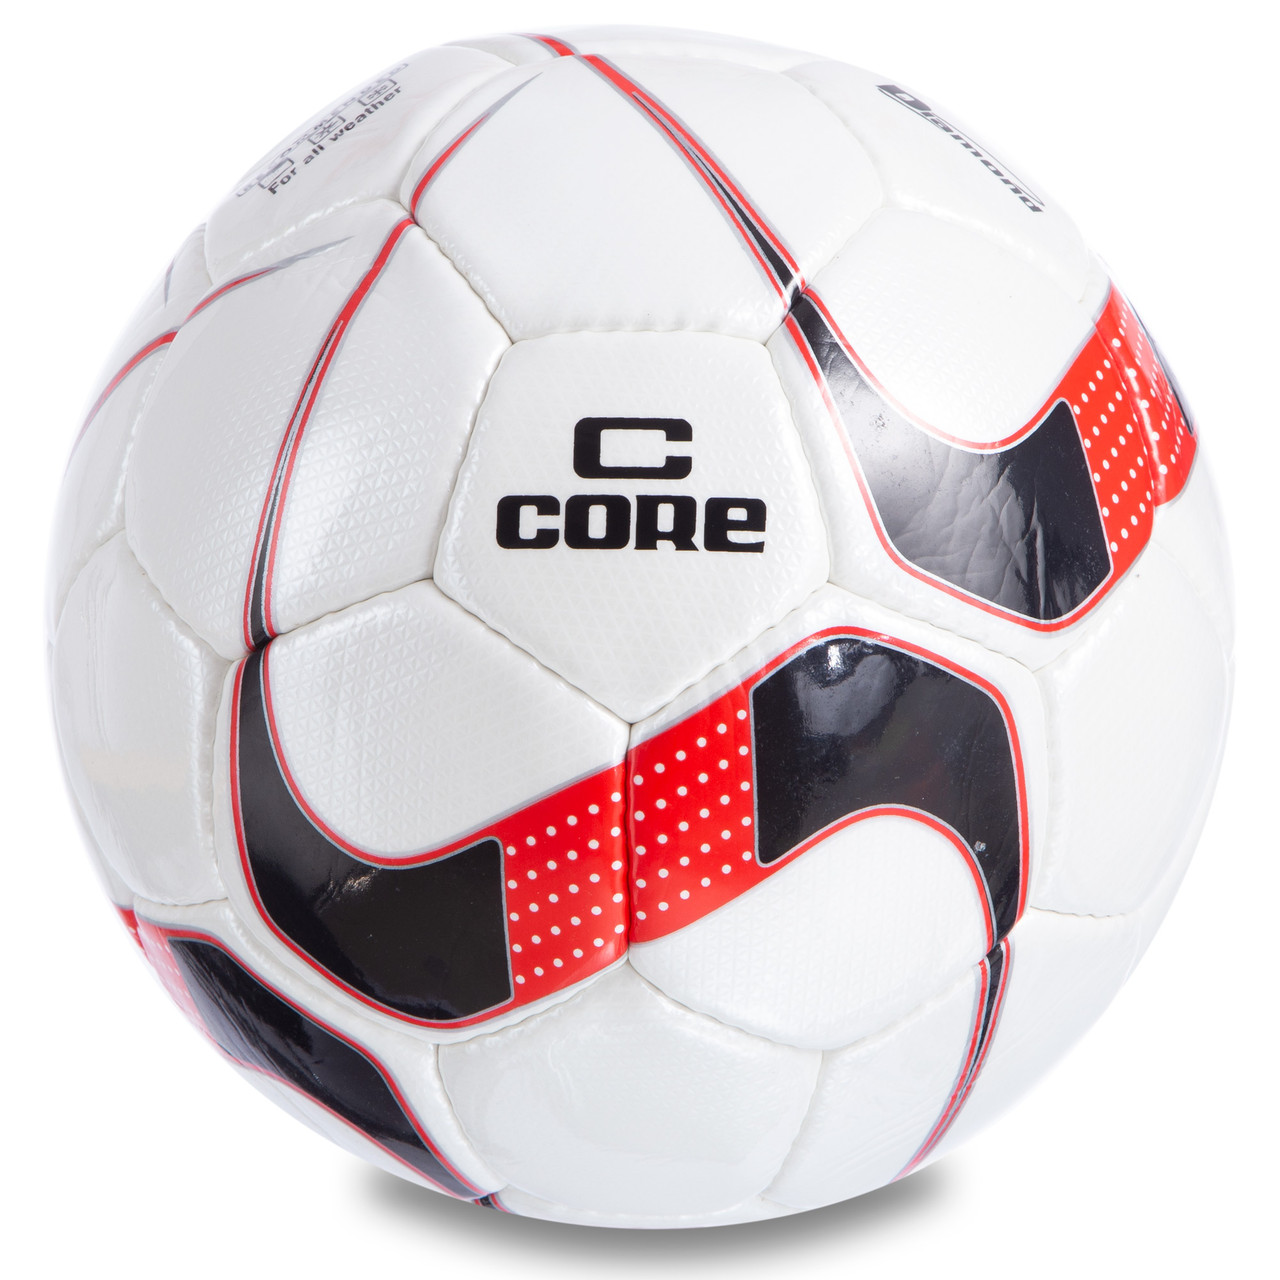 Мяч футбольный CORE DIAMOND CR-025 №5 PU белый-черный-красный, фото 1